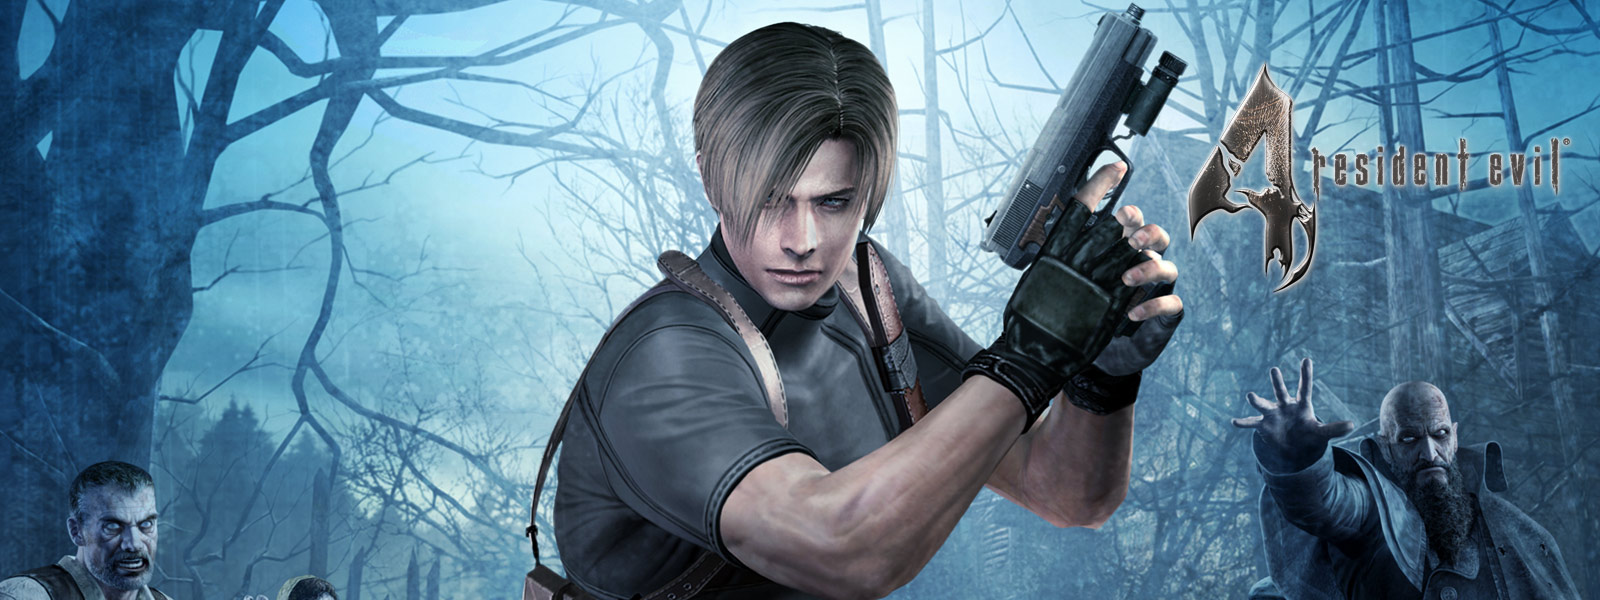 Resident Evil 4, karakter med pistol i en mørk skog omgitt av zombier